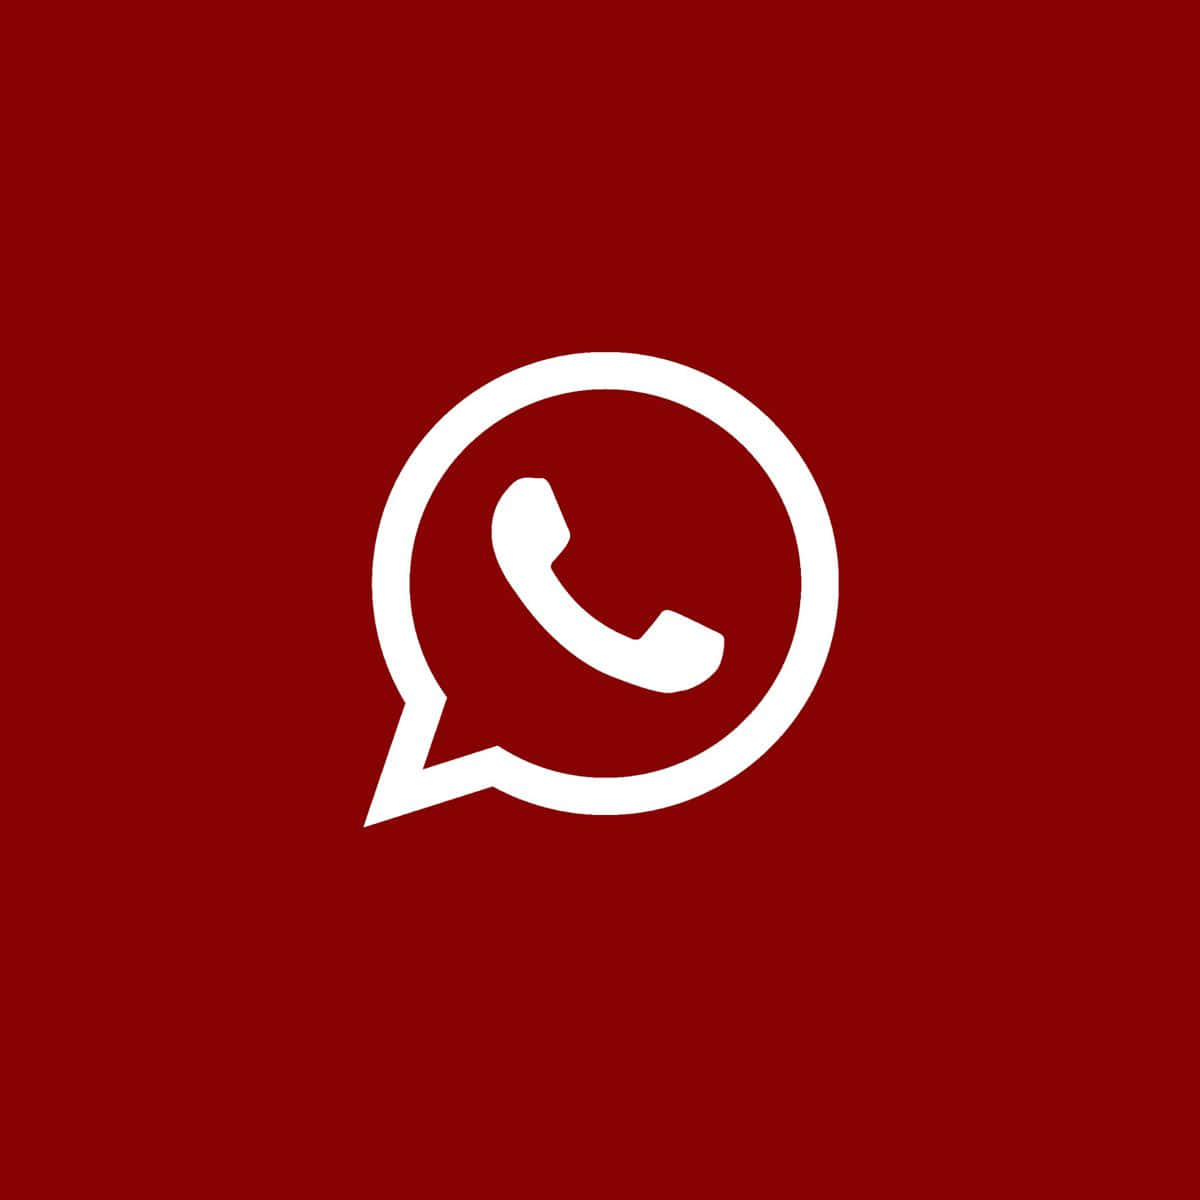 Logodi Whatsapp Su Uno Sfondo Rosso